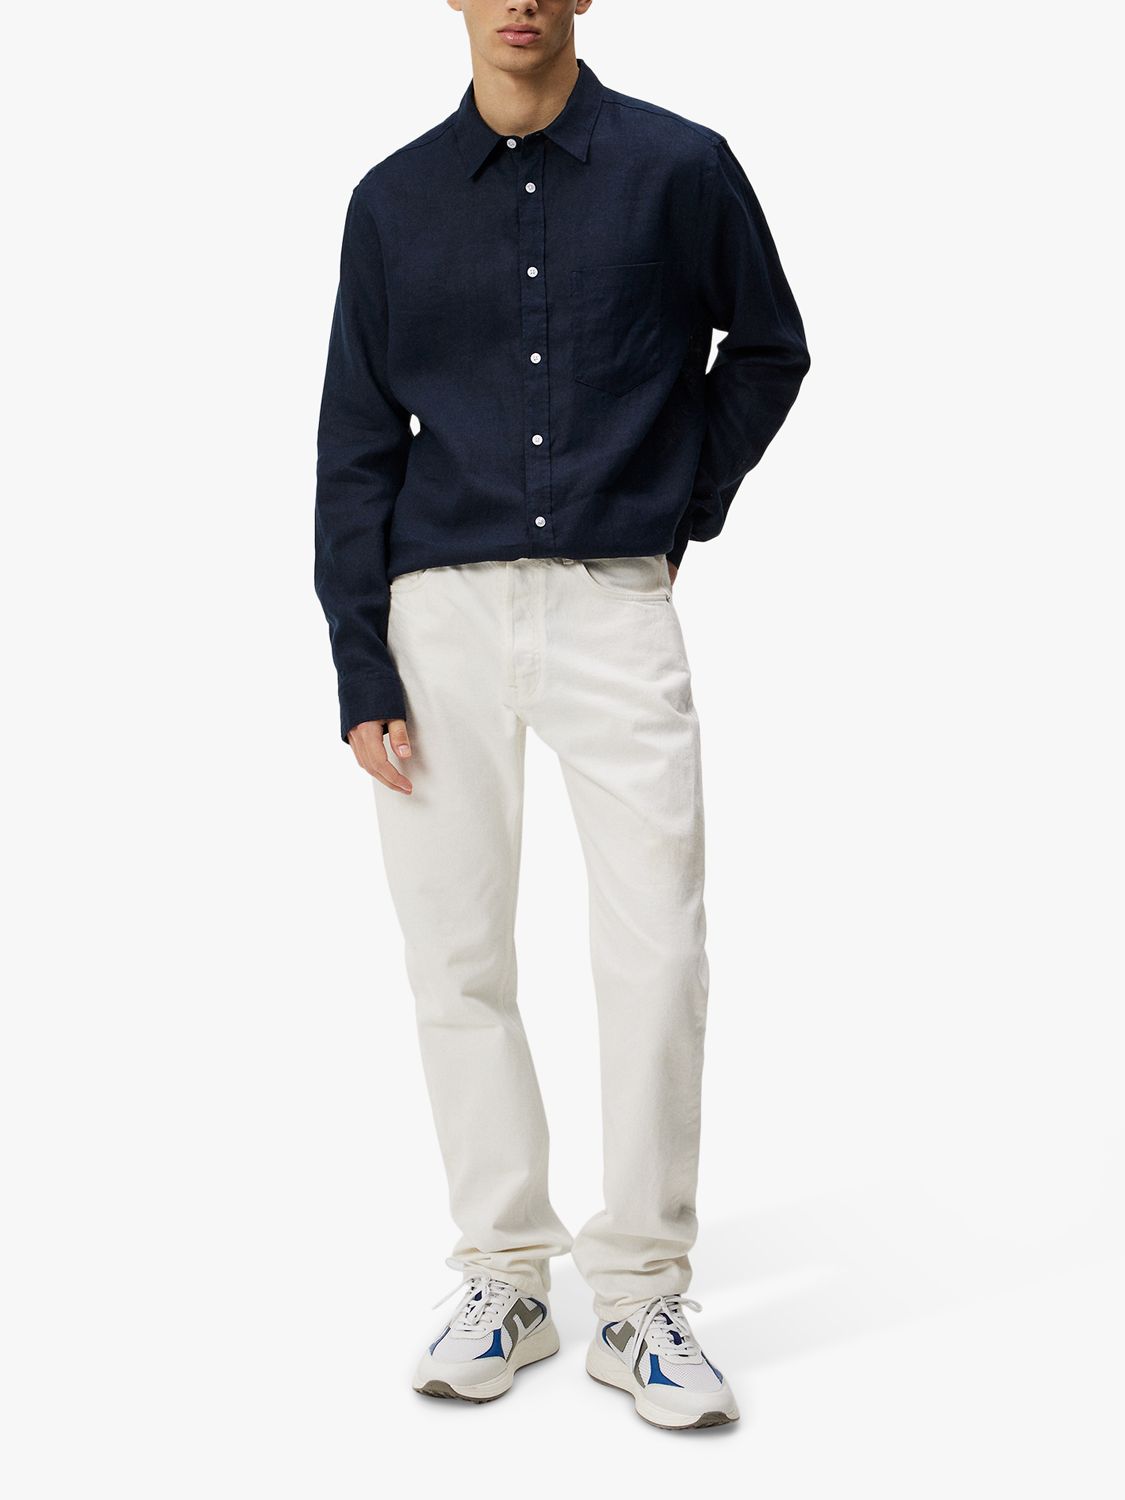 J.Lindeberg Regular Fit Long Sleeve Linen Shirt, Navy, M